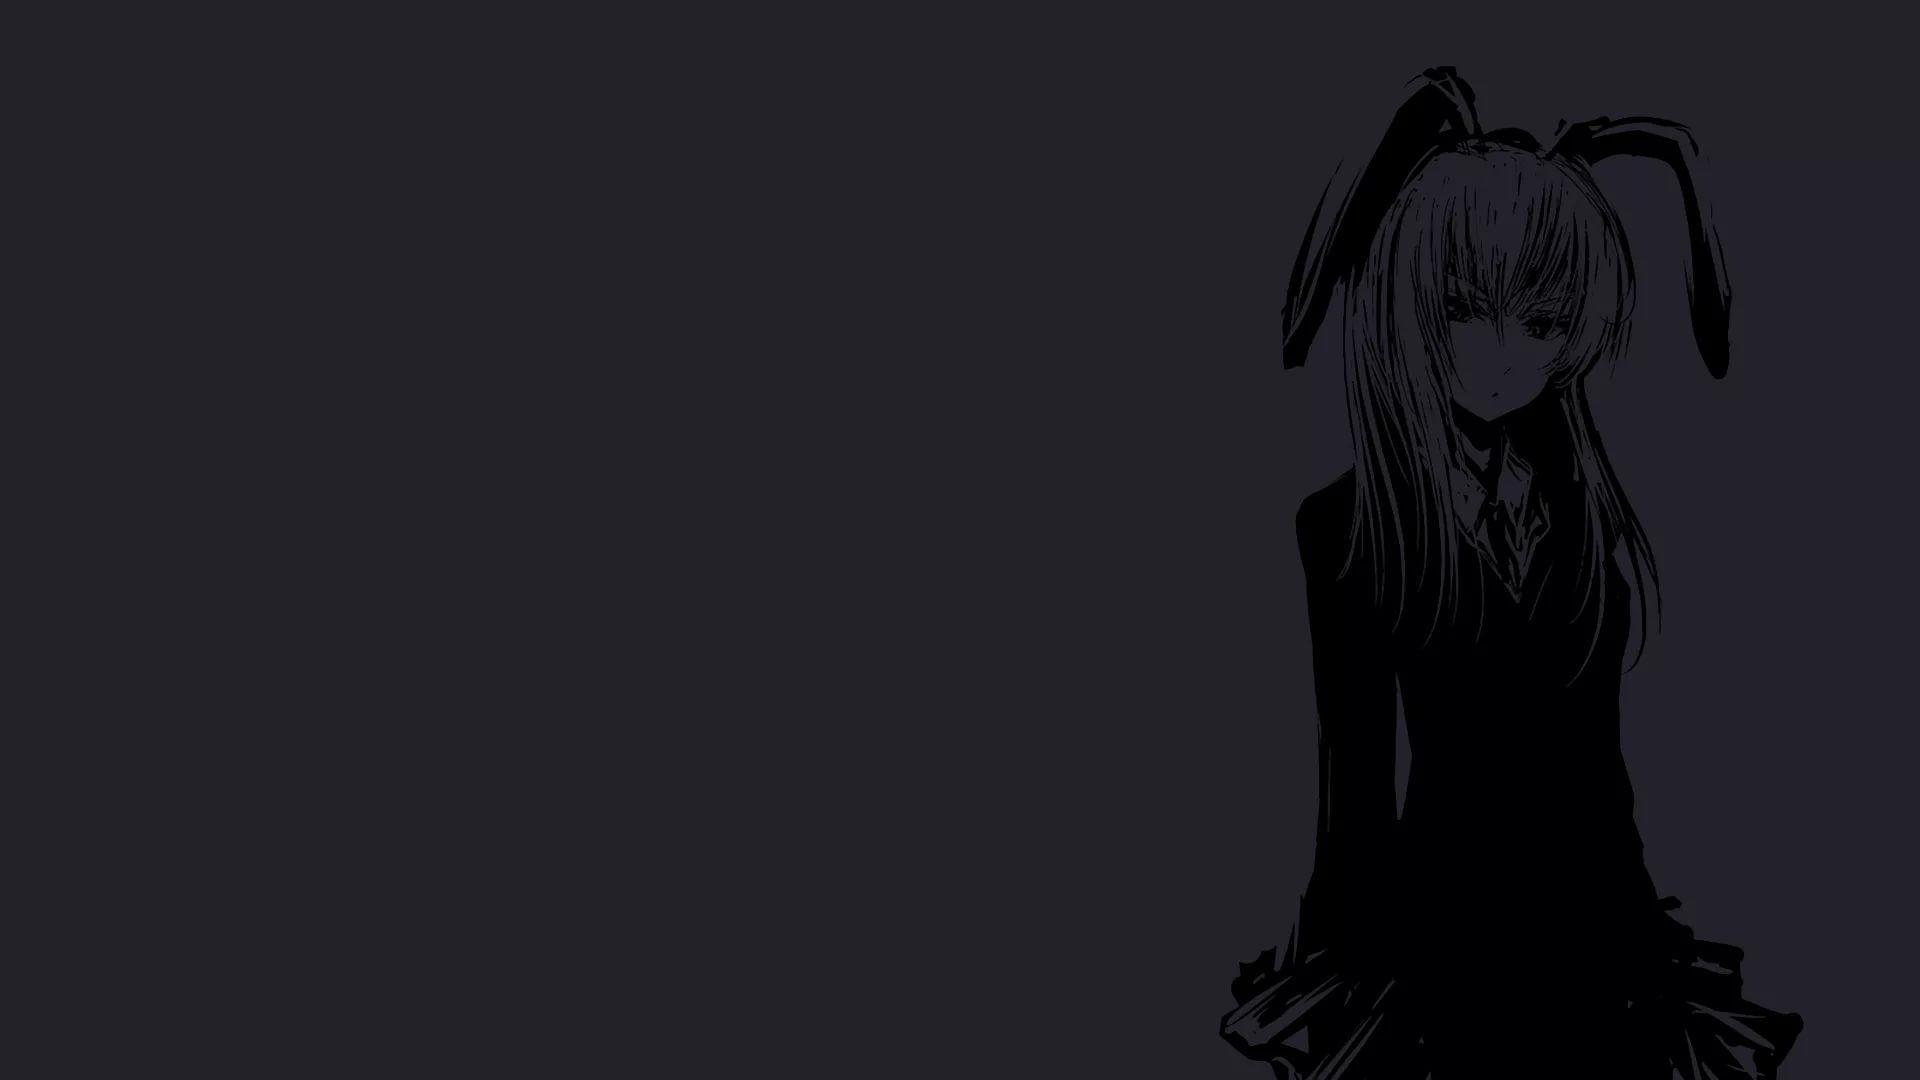 1920x1080 Hình nền Anime đen tối